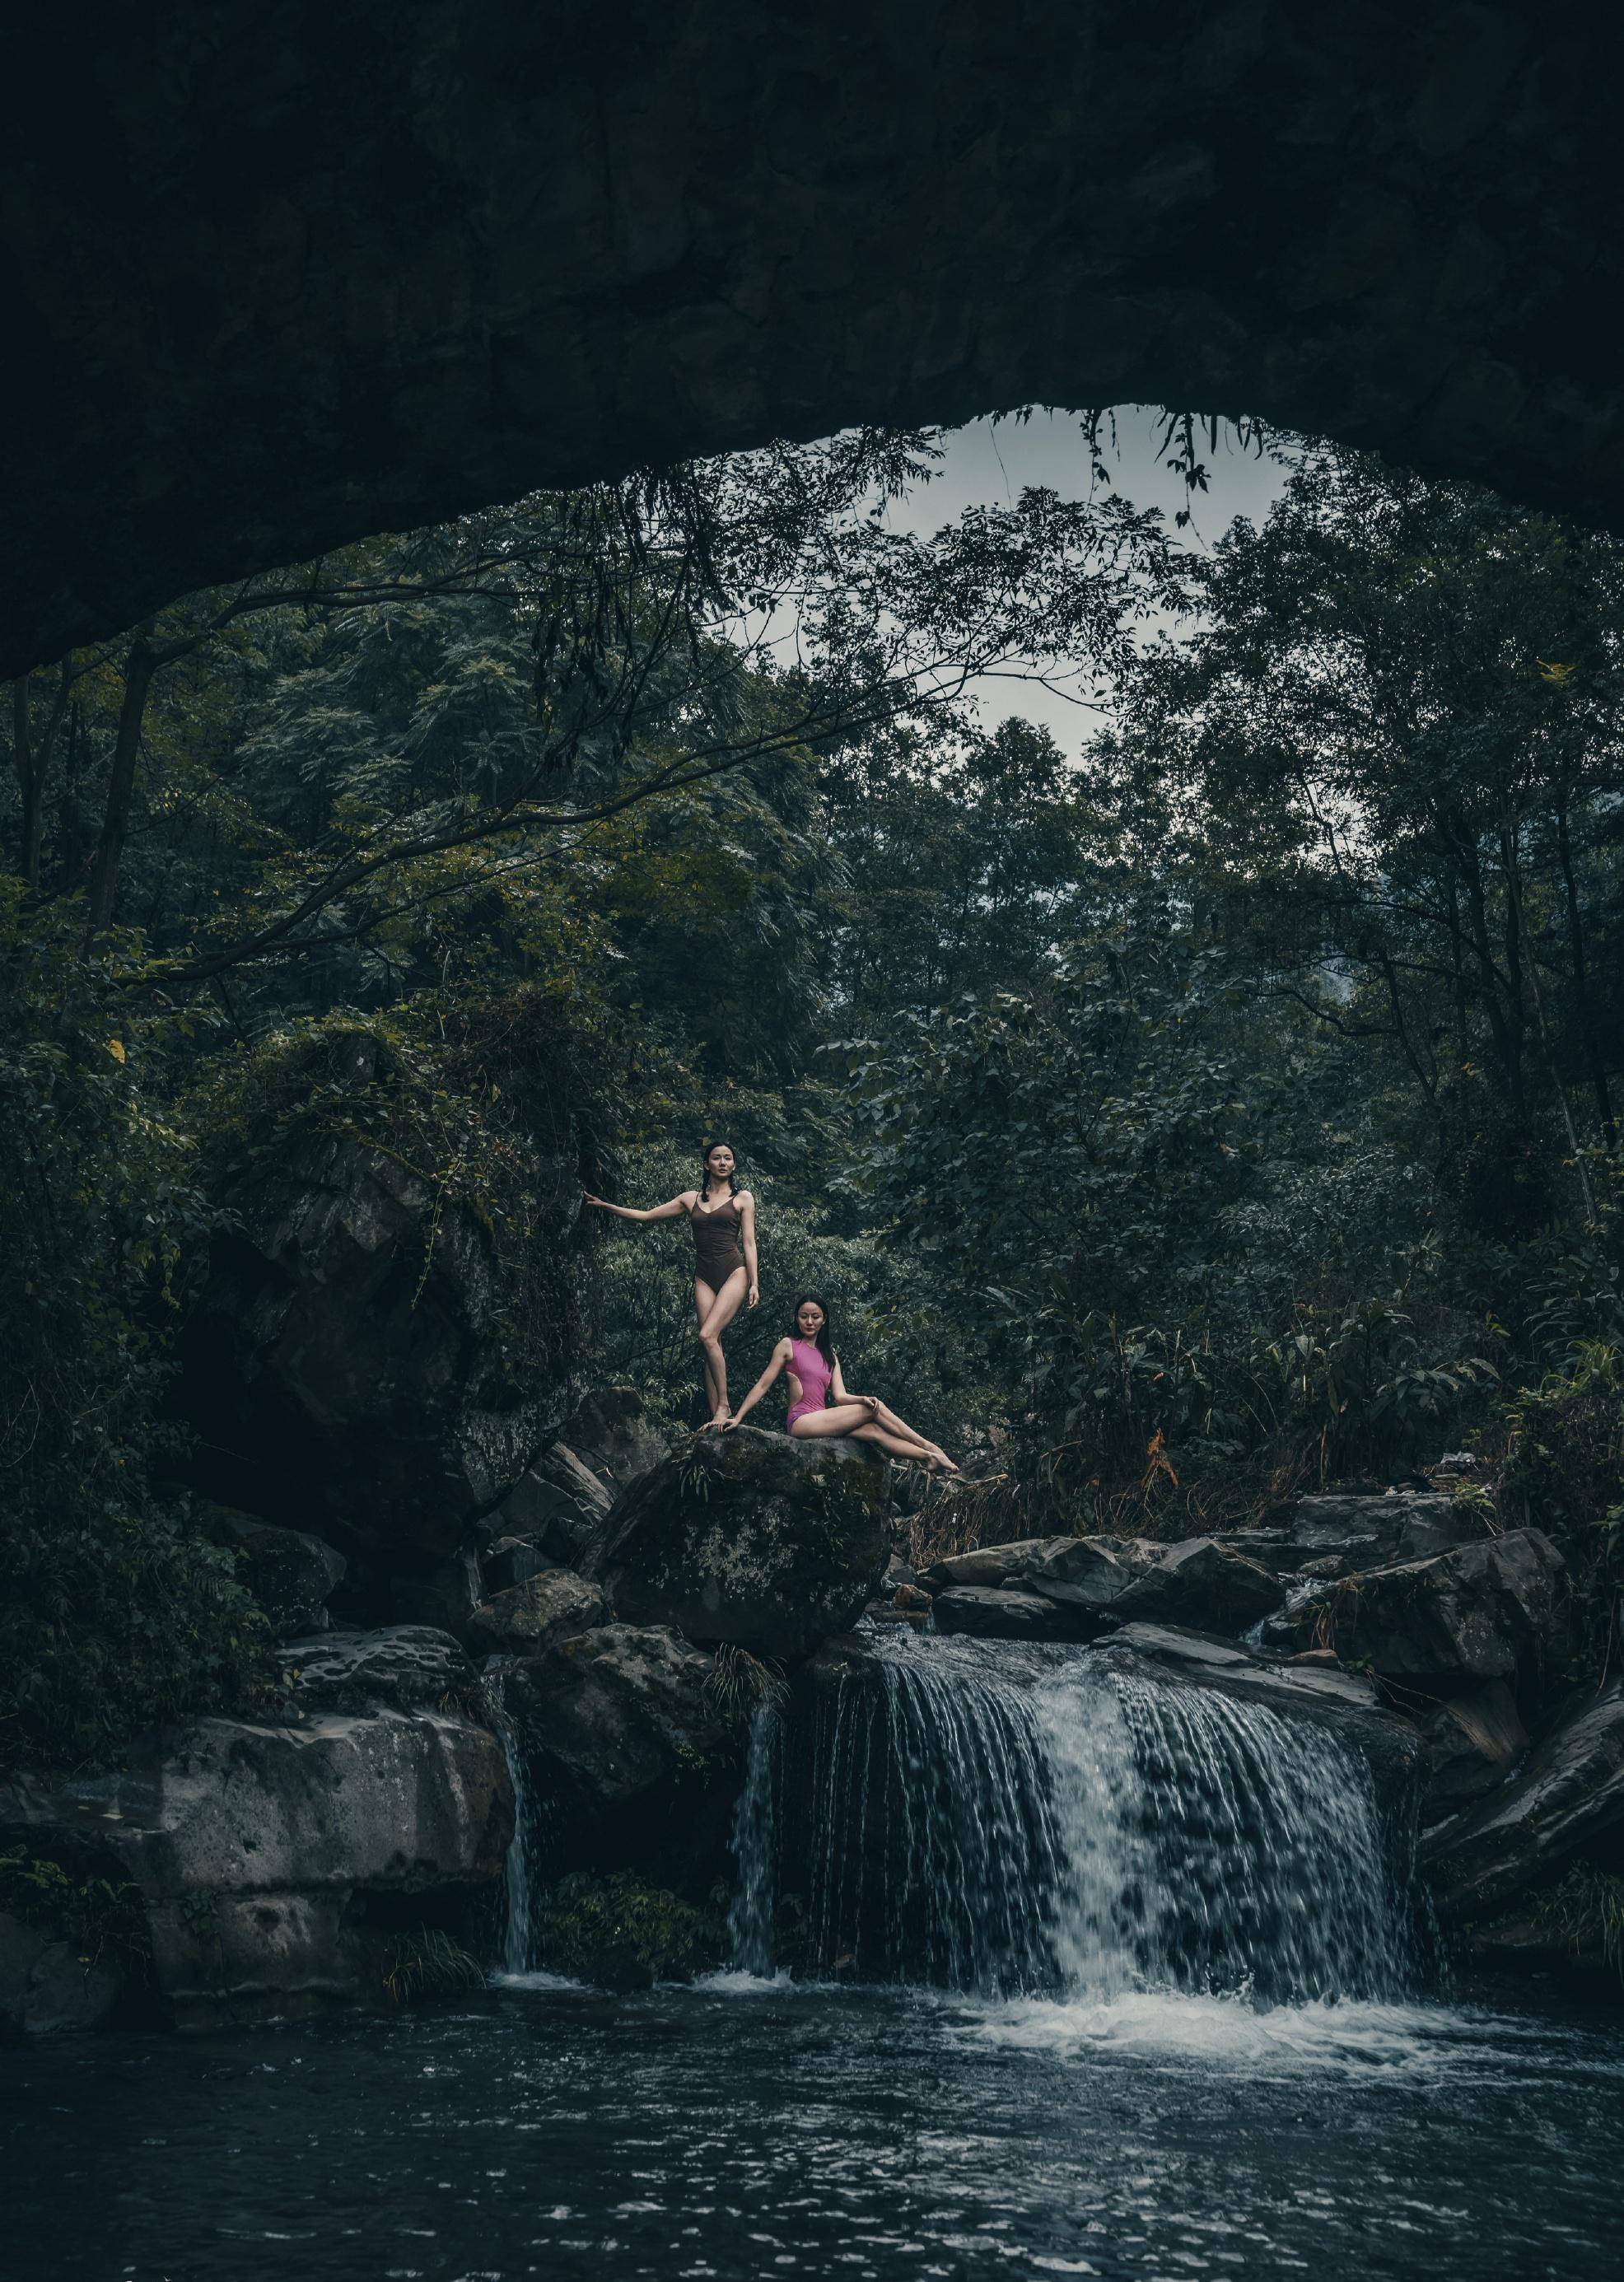 花样游泳女神蒋婷婷姐妹在森林瀑布中展现健美身材